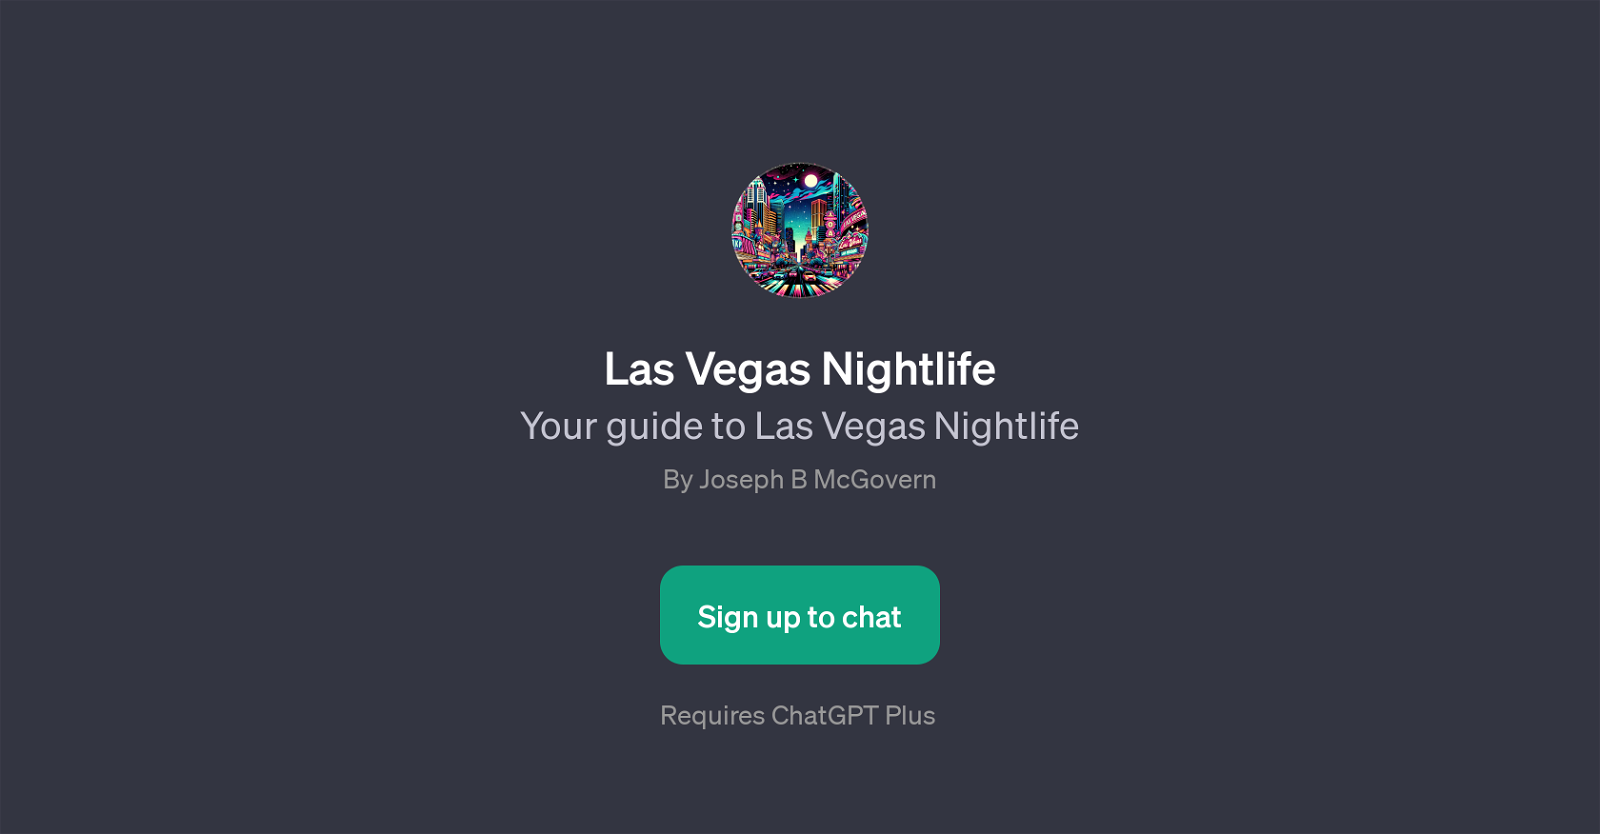 Las Vegas Nightlife website